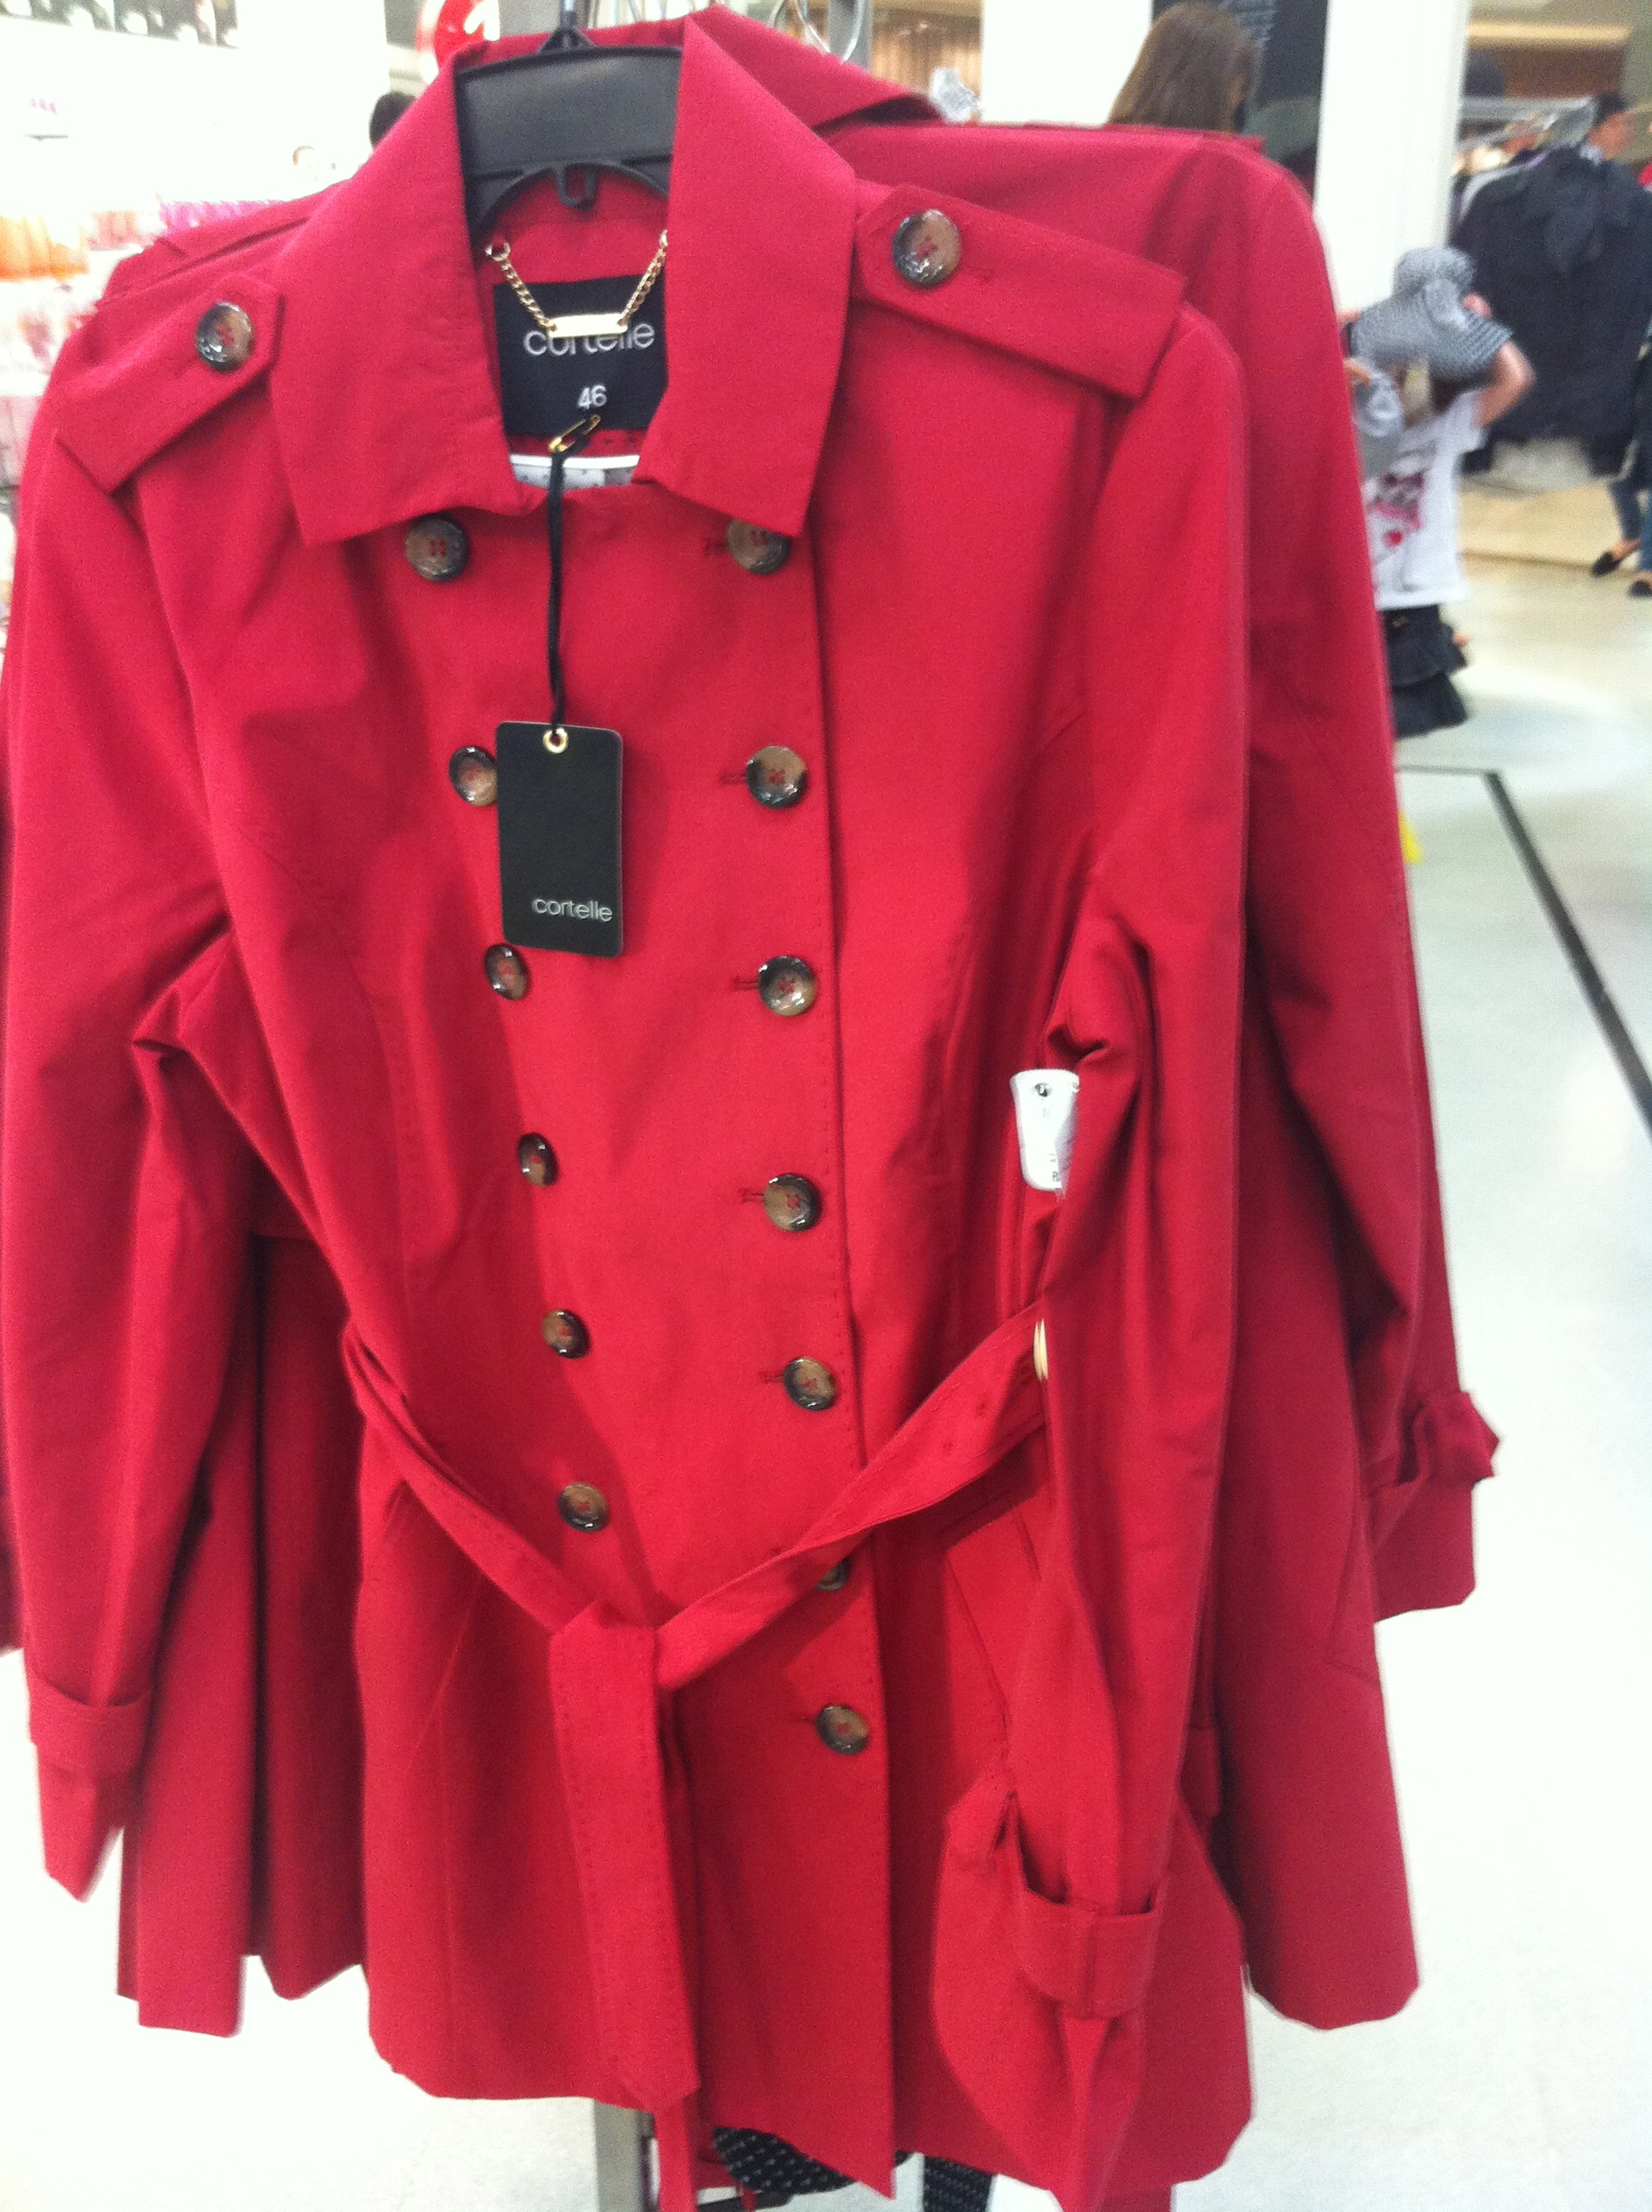 trench coat vermelho feminino